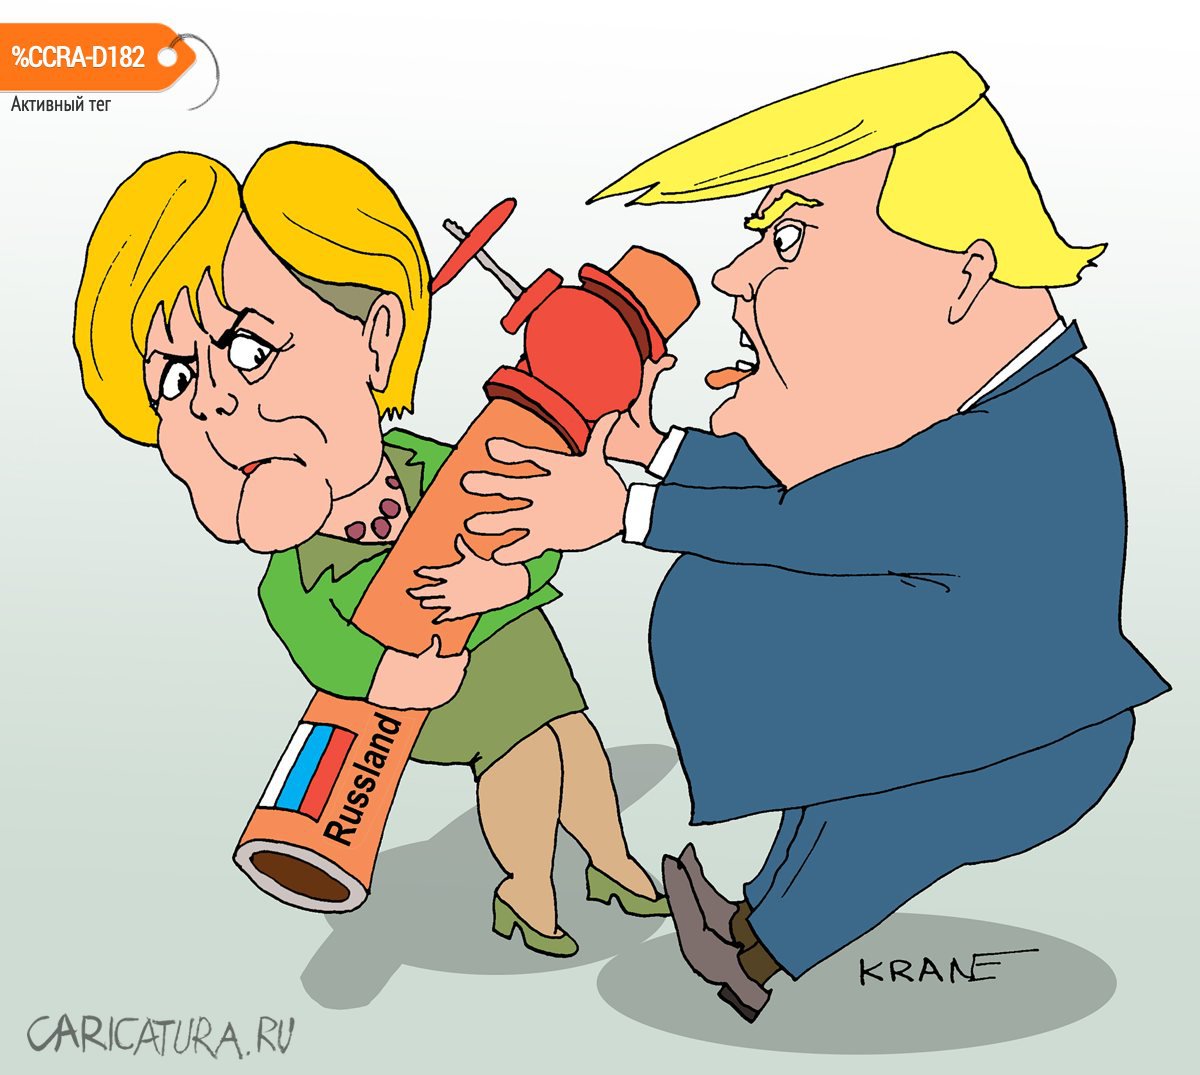 Карикатура "Союз трубы и обороны", Евгений Кран